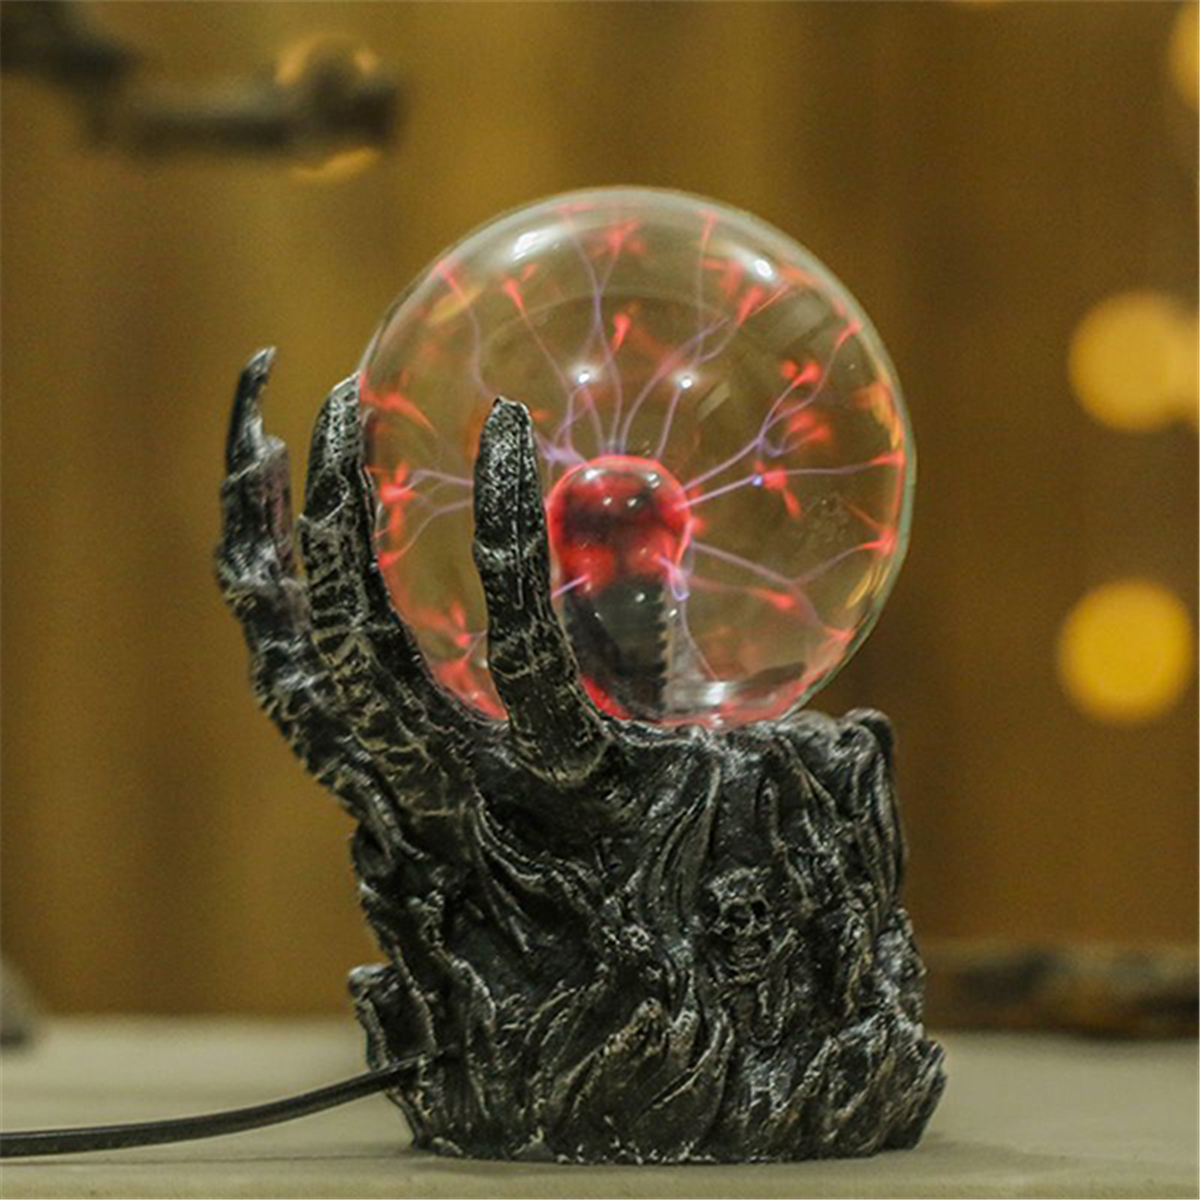 5567-Inches-Plasma-Ball-Skeleton-Sphere-Light-Crystal-Light-Magic-Desk-Lamp-Novelty-Light-Home-Decor-1446929